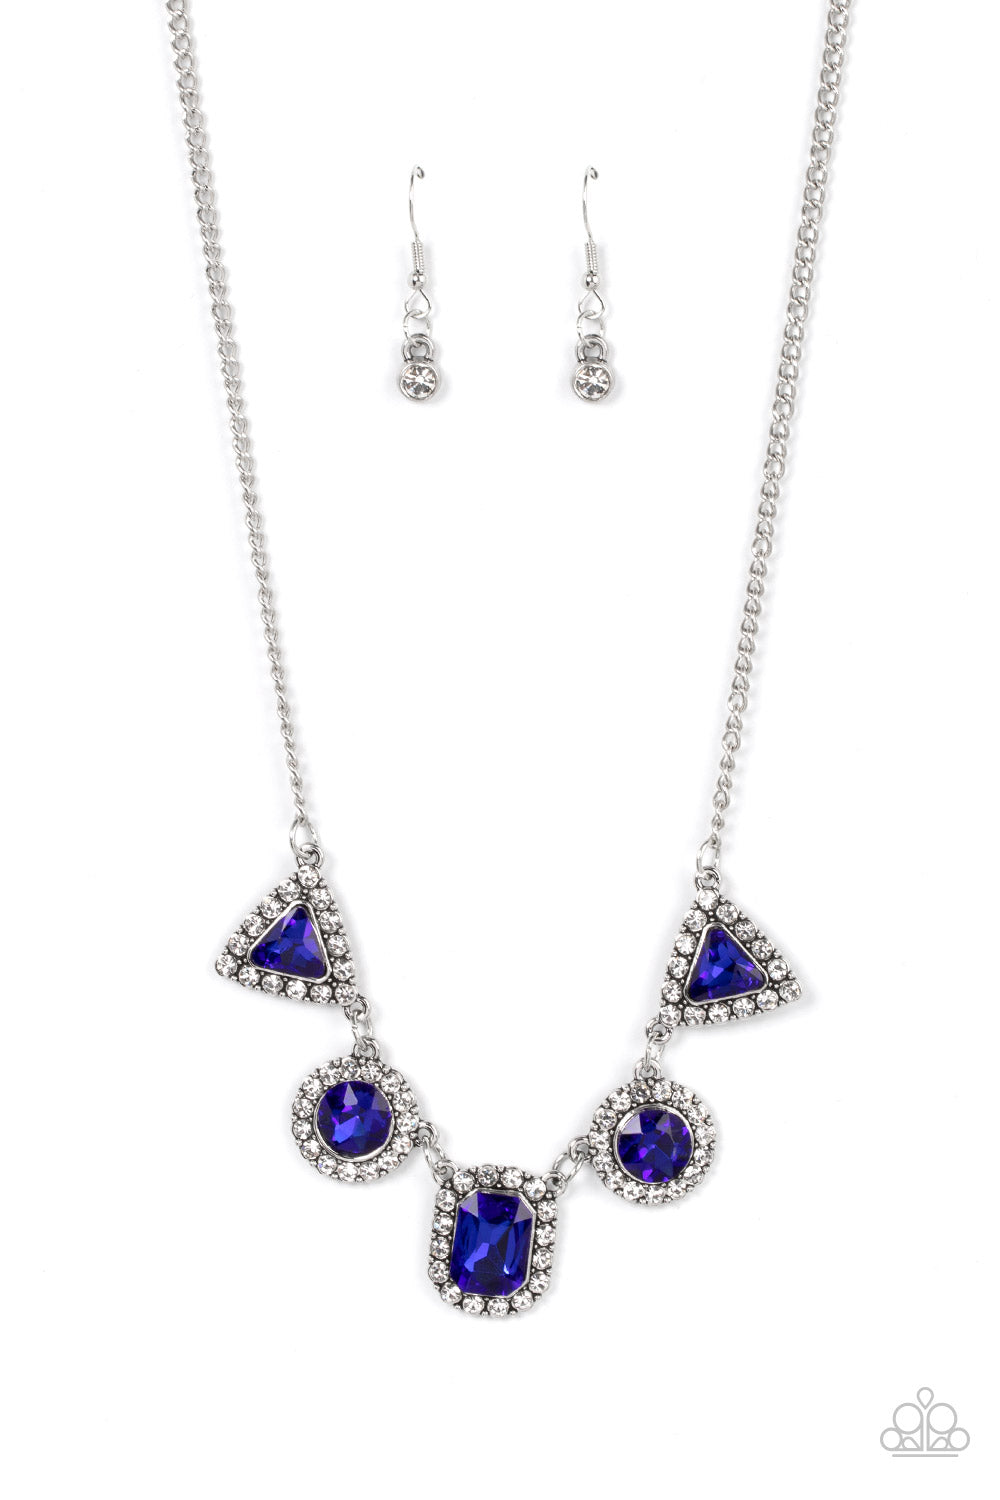 Posh Party Avenue - Blue Necklace - Paparazzi Accessories - Paparazzi Accessories 